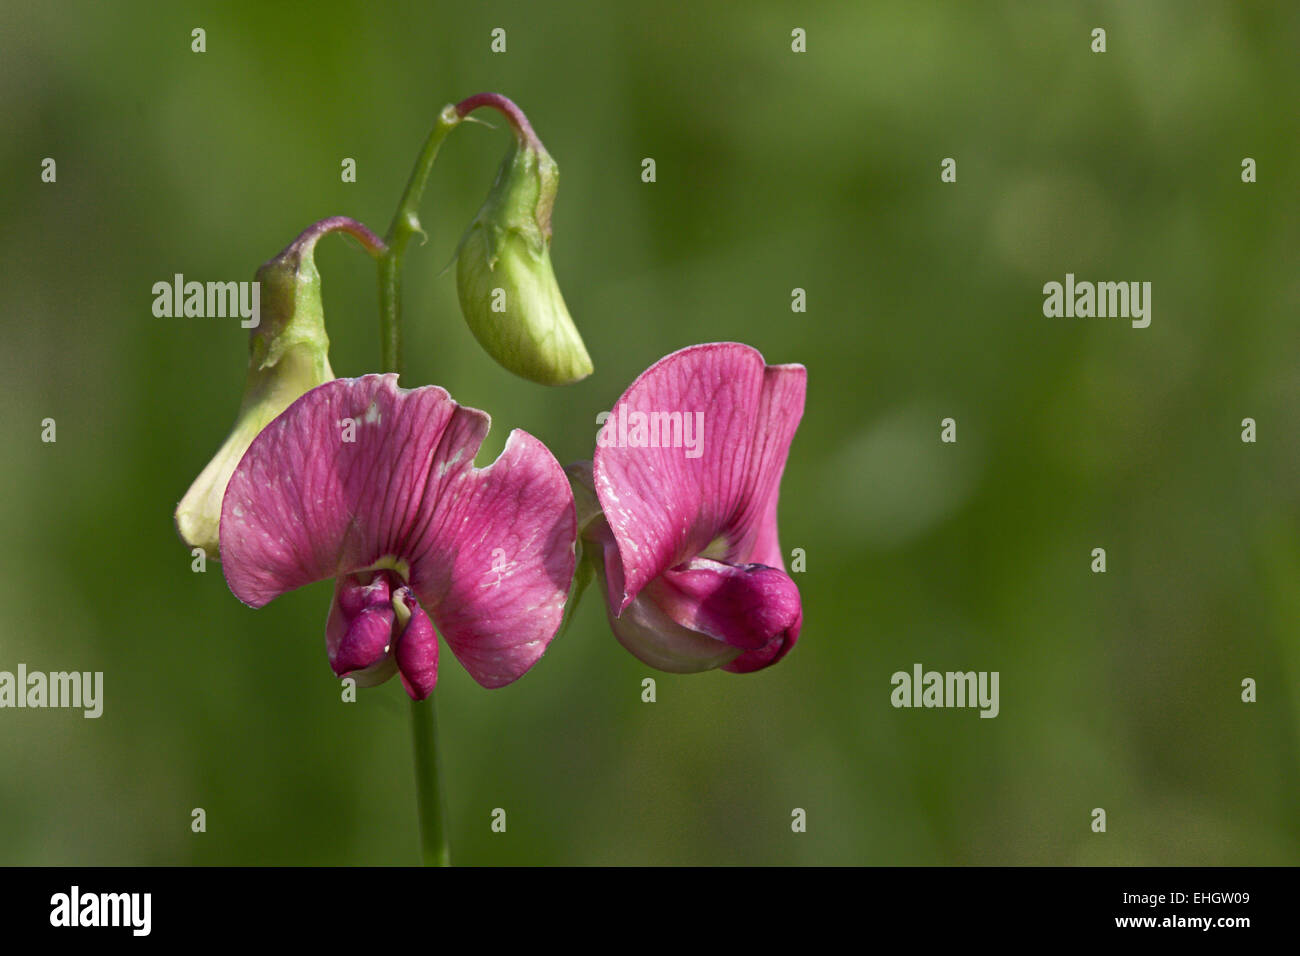 Perennial Peavine, Lathyrus latifolius Stock Photo